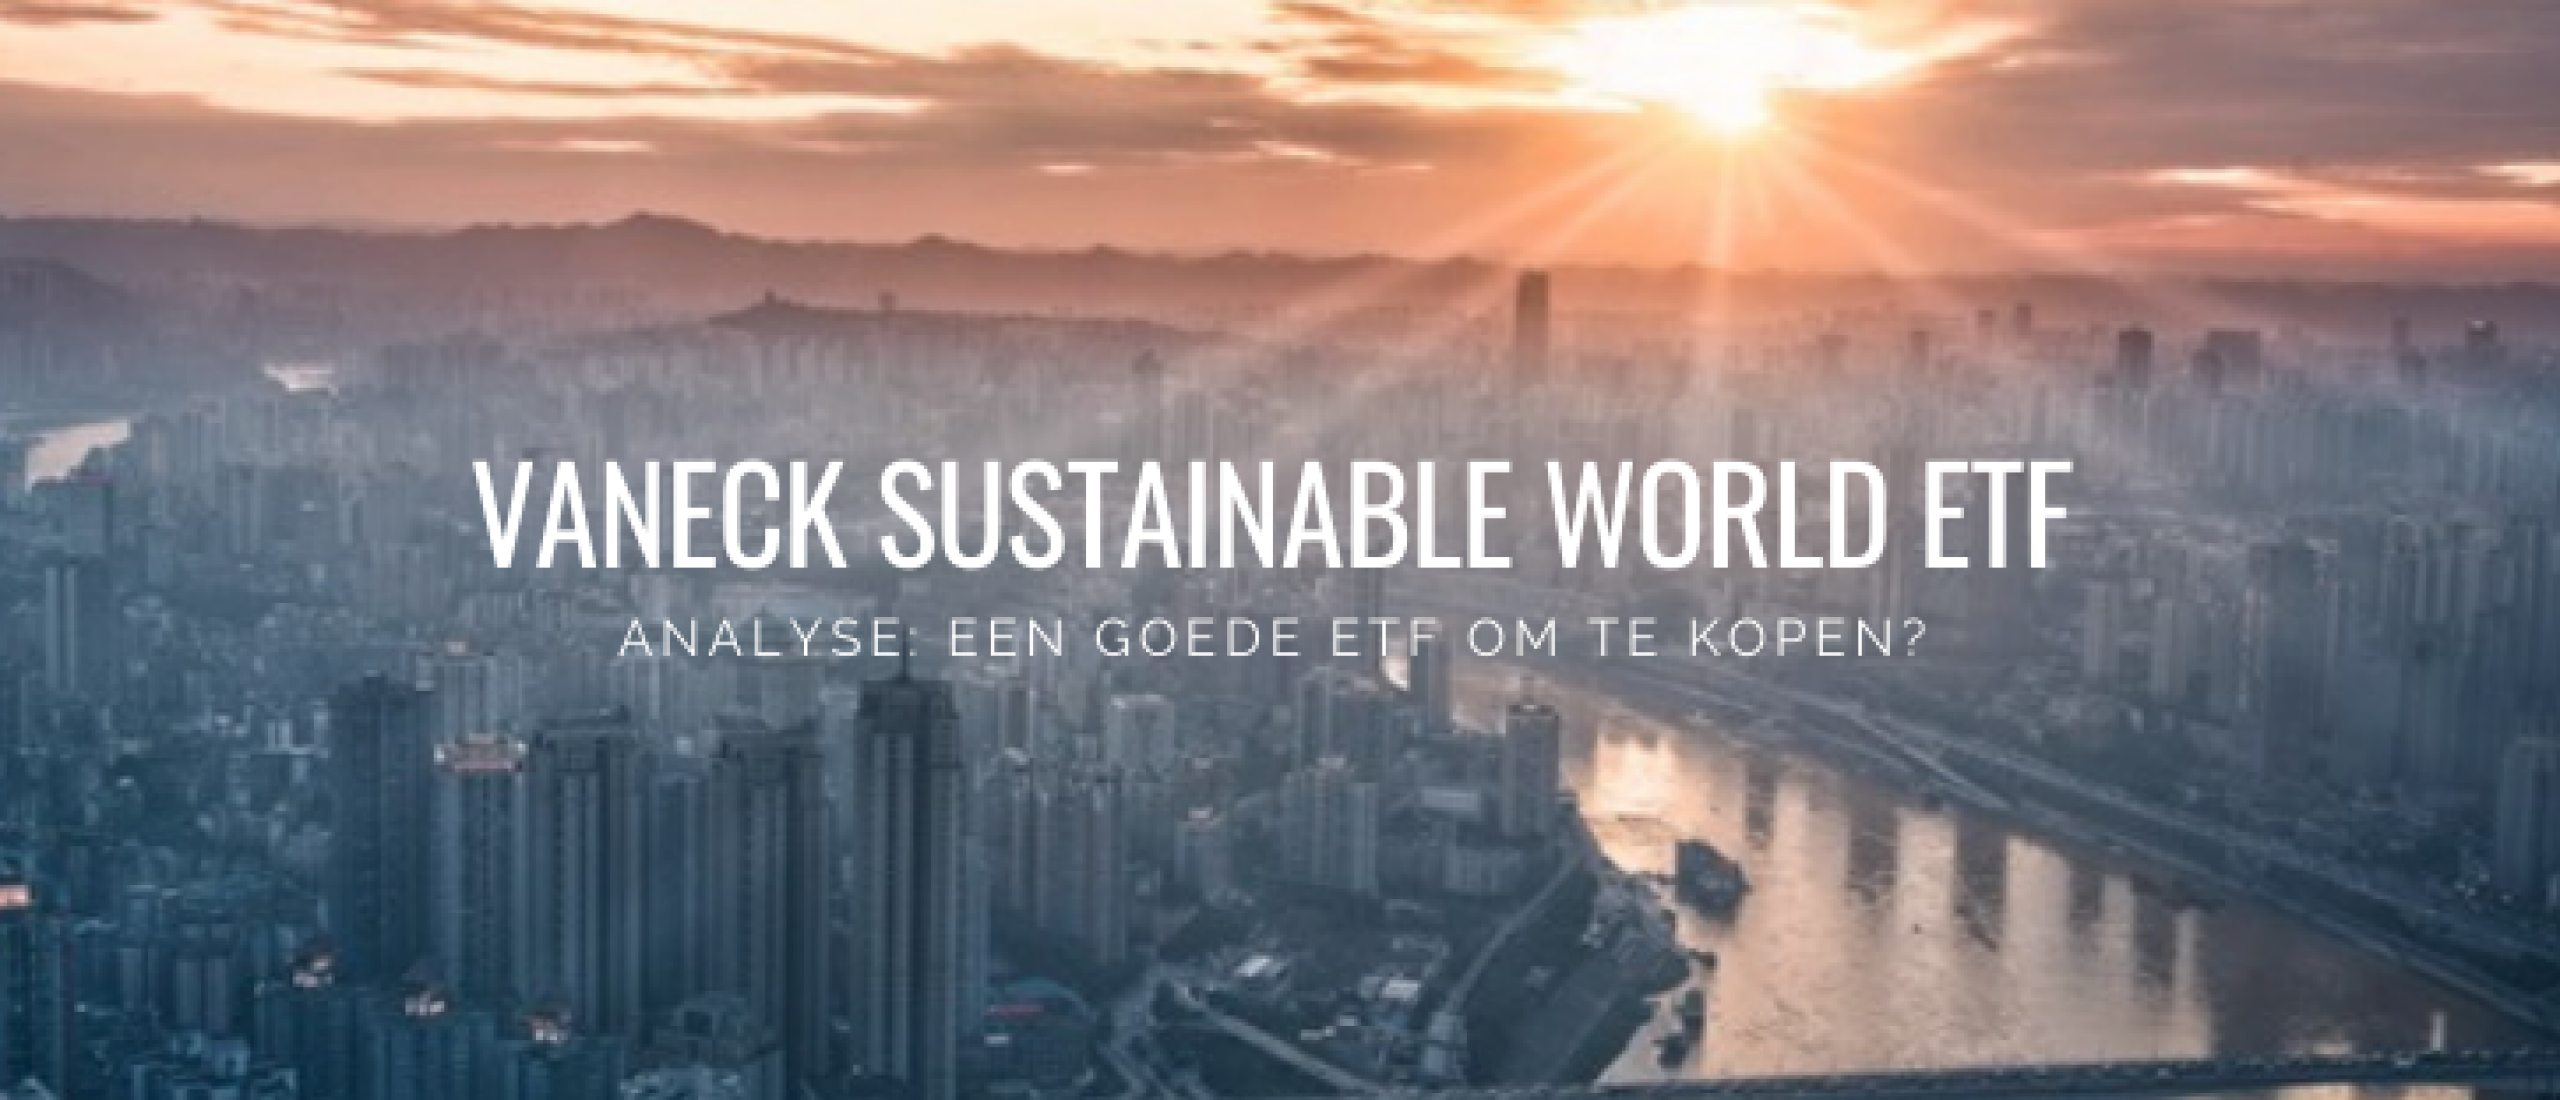 vaneck-sustainable-world-etf-analyse